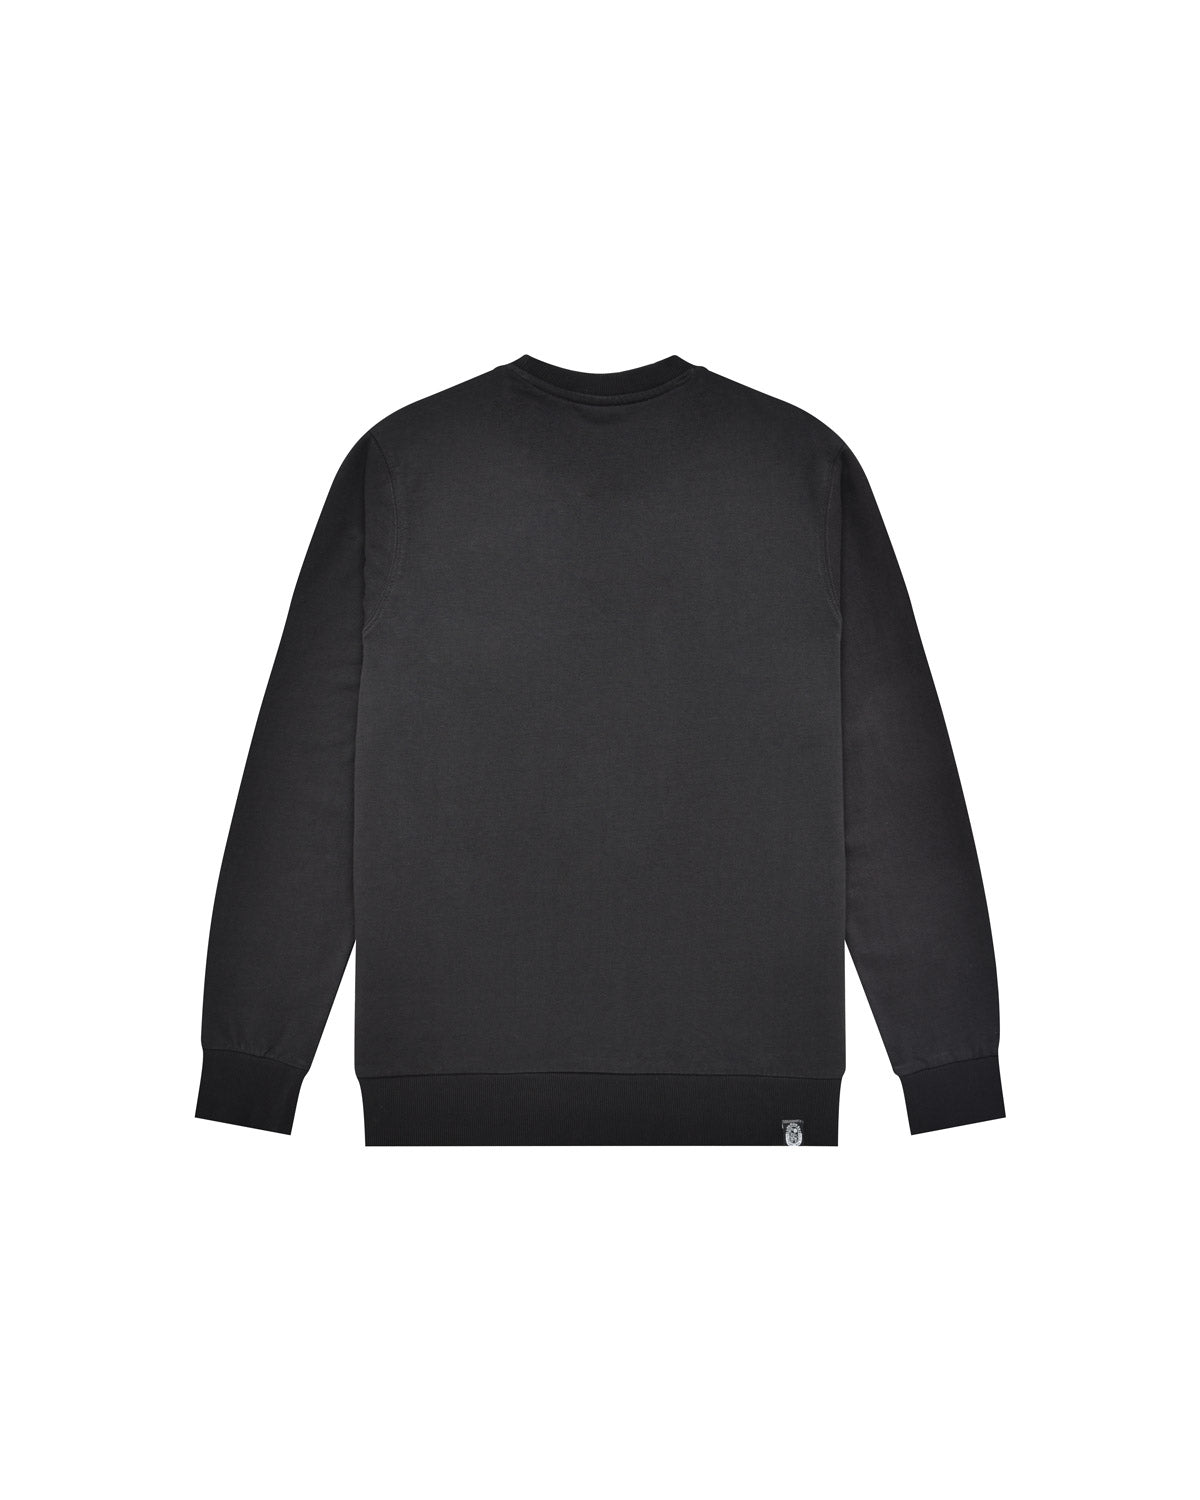 Man | Black Crewneck Sweatshirt In 100% Cotton With “Corazon Espinado” Print